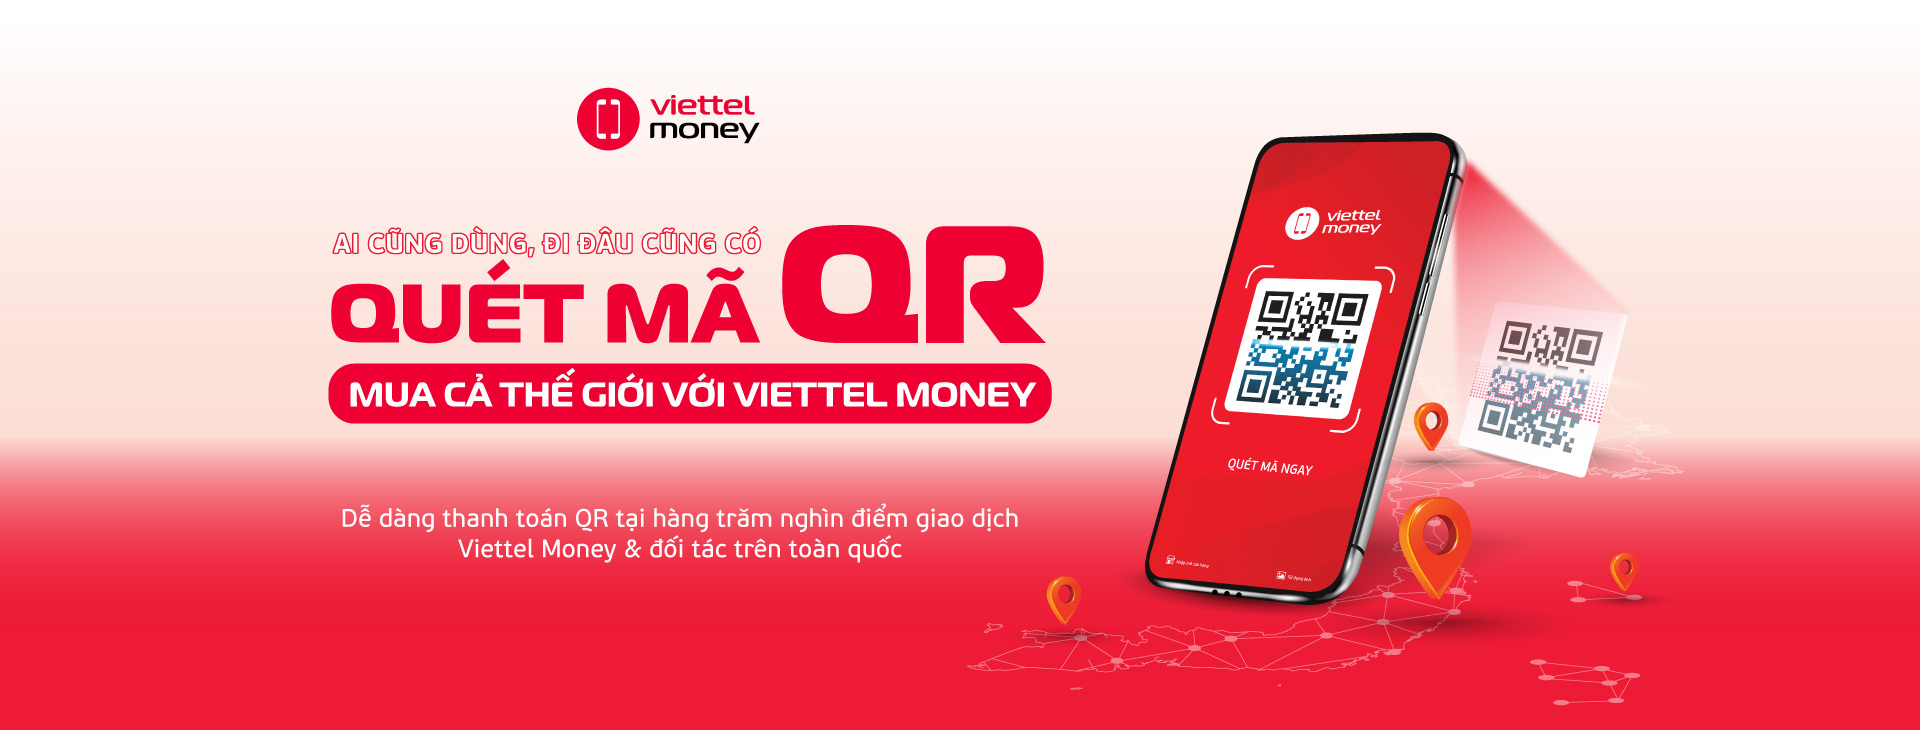 Có thể quét mã QR Viettel Money để thanh toán ở đâu?